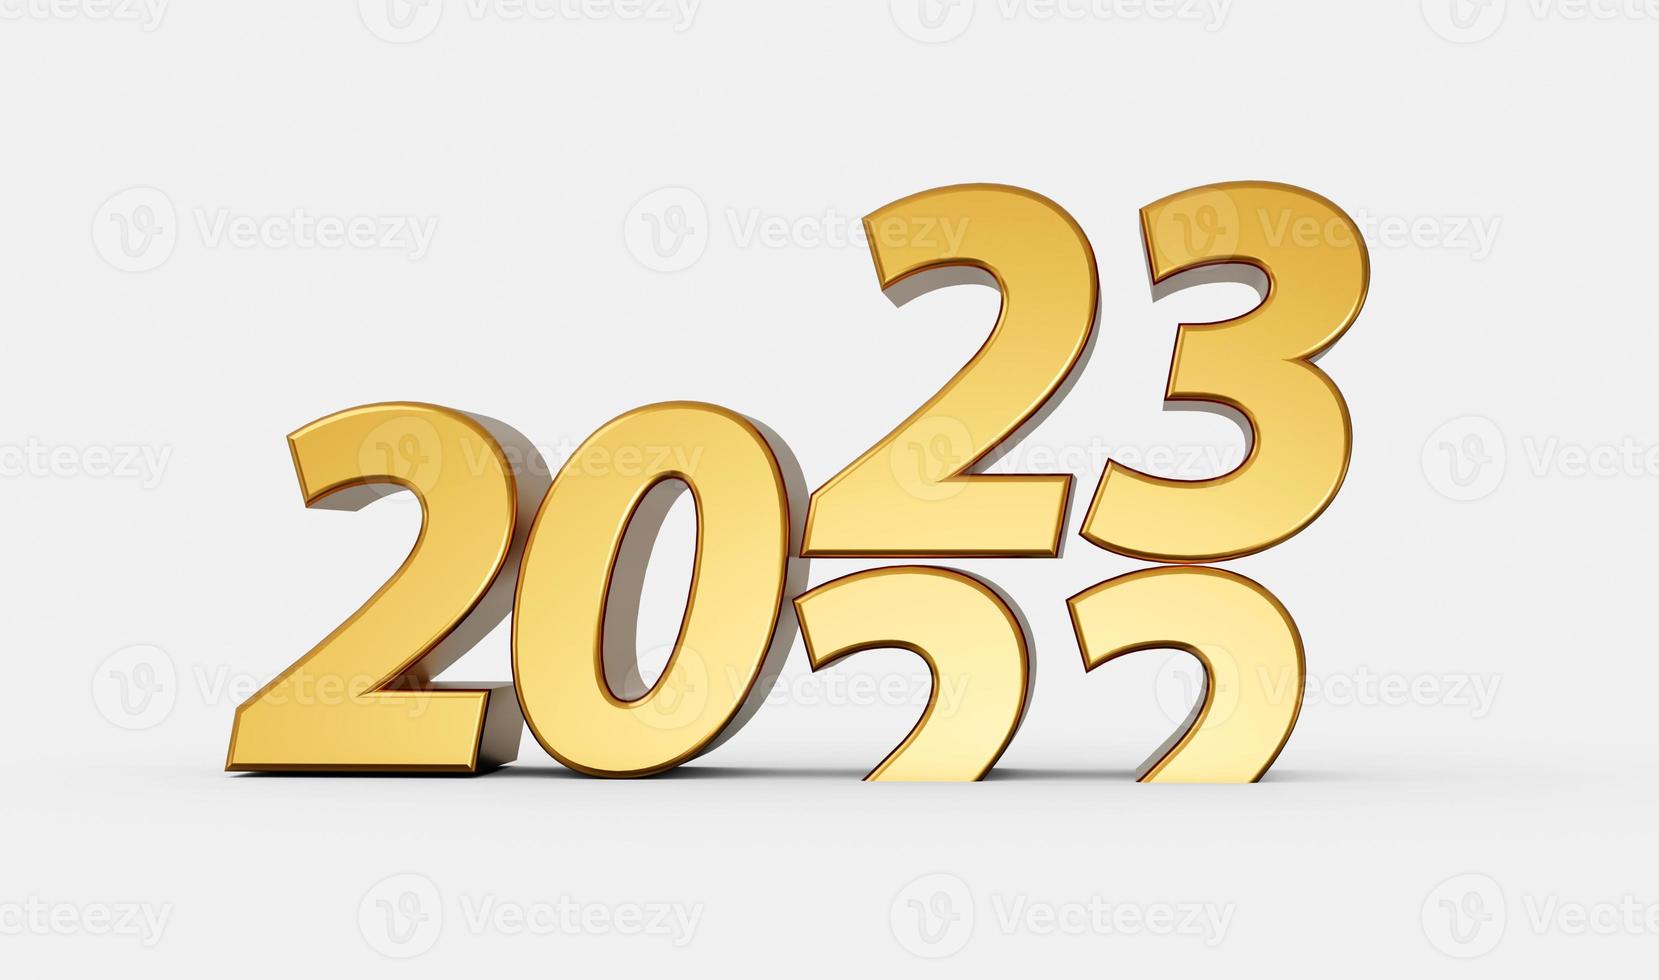 2023 arriba 2022 abajo año nuevo sobre fondo blanco. ilustración 3d aislada foto